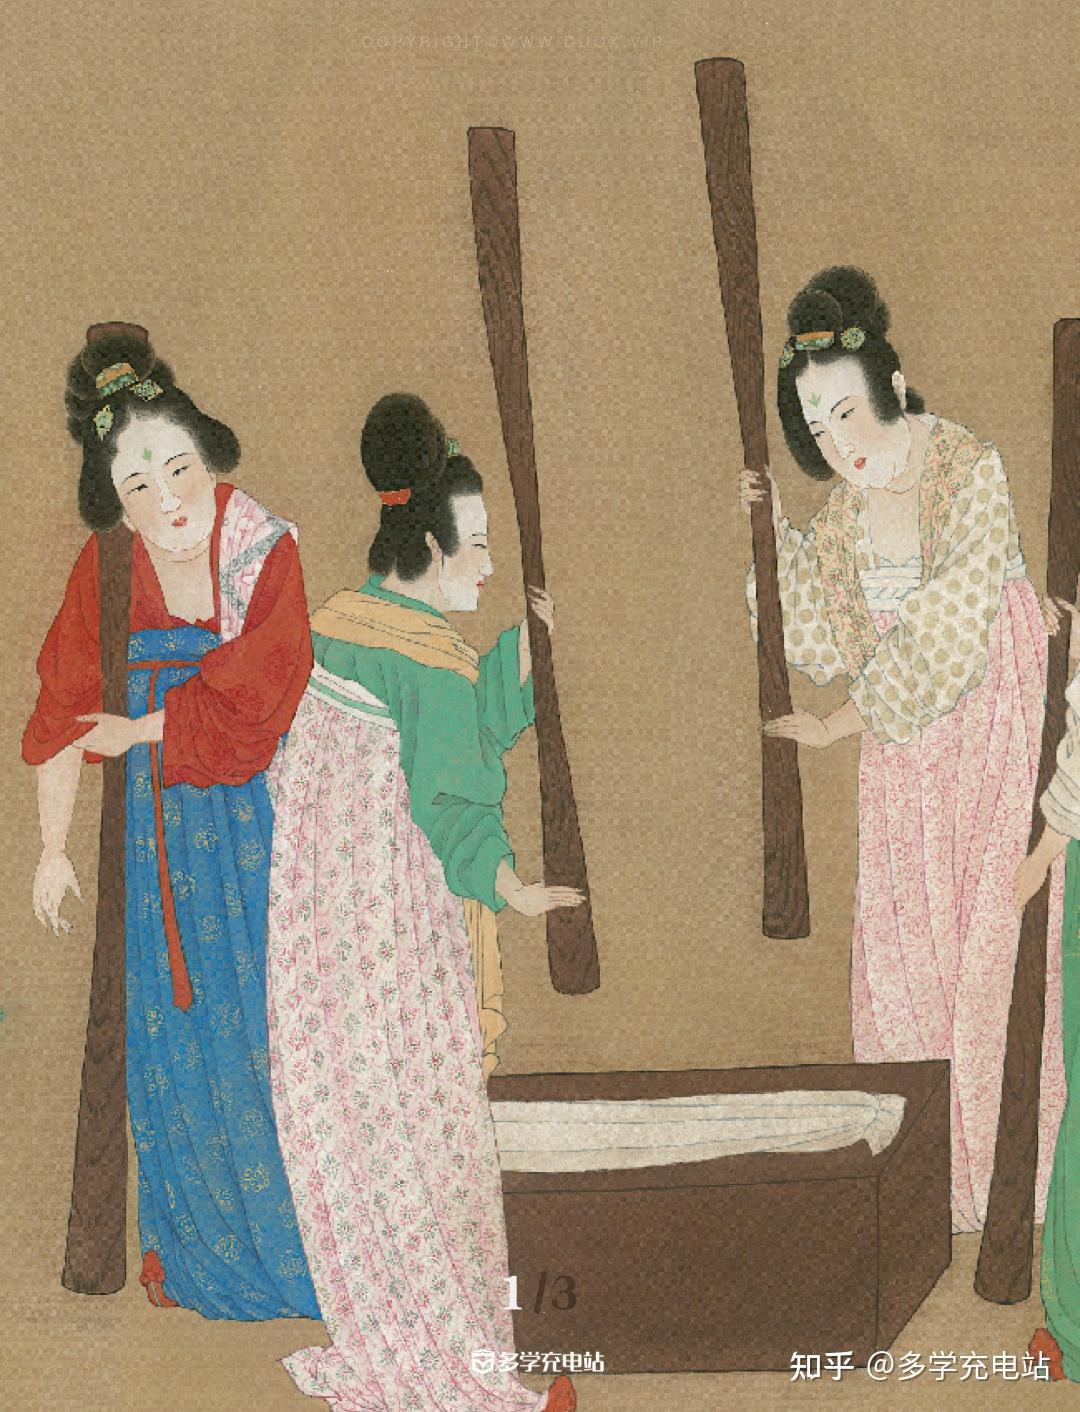 《捣练图》描绘的是唐代宫女在捣练,络线,熨平,缝制劳动操作时的情景